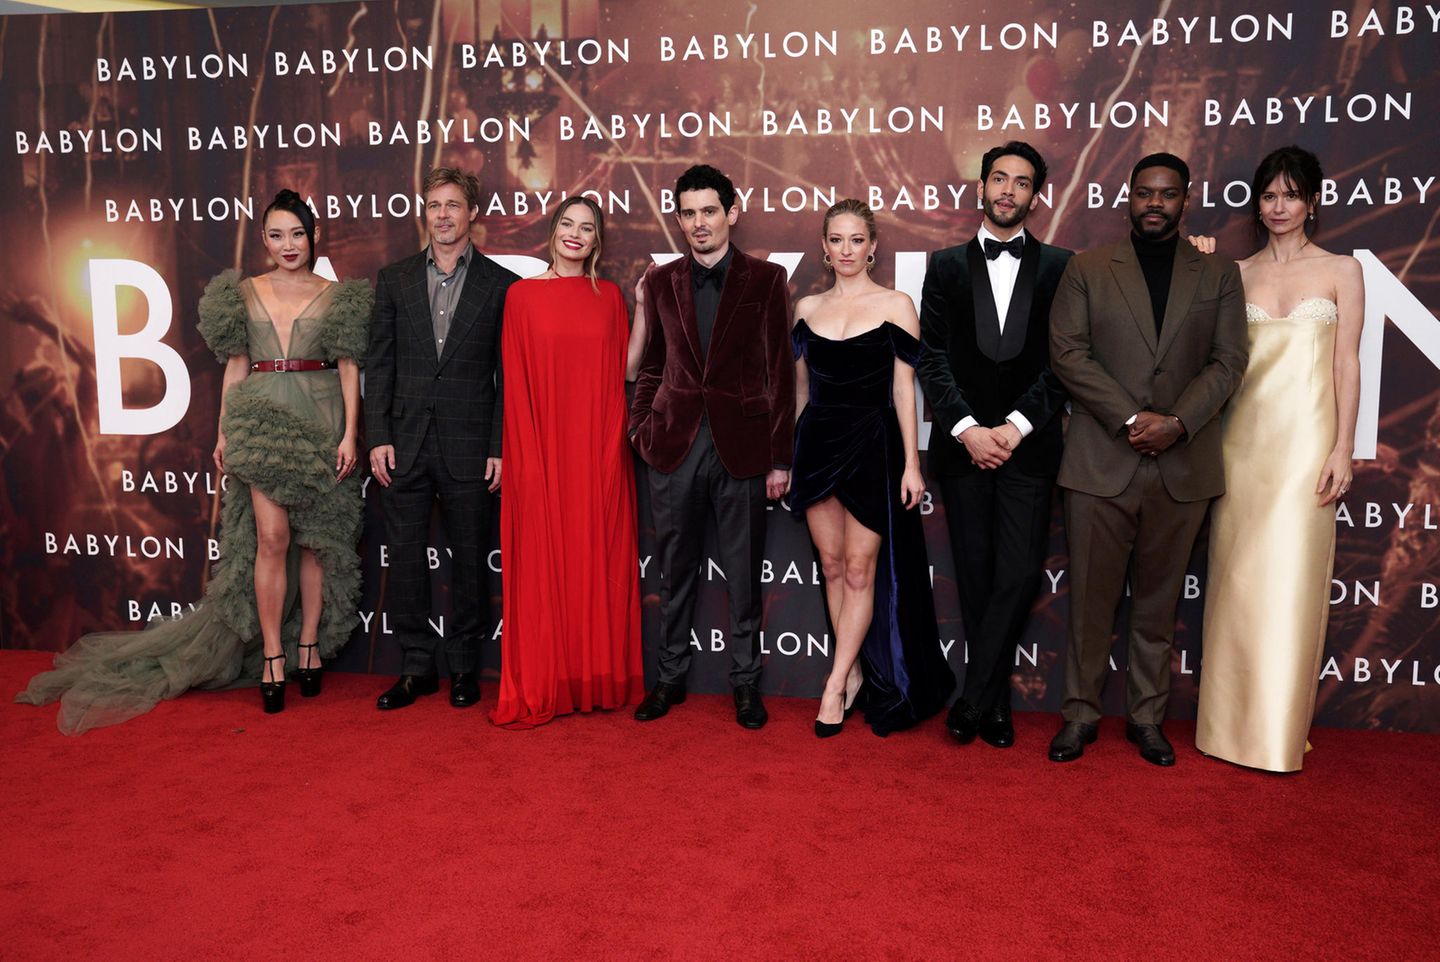 Der ganze "Babylon"-Cast ist toll gestylt: Brad Pitt zeigt sich im graukarierten Tom-Ford-Anzug, auf der anderen Seite glänzt Katherine Waterston im hellgelben Bustier-Look besonders schön.